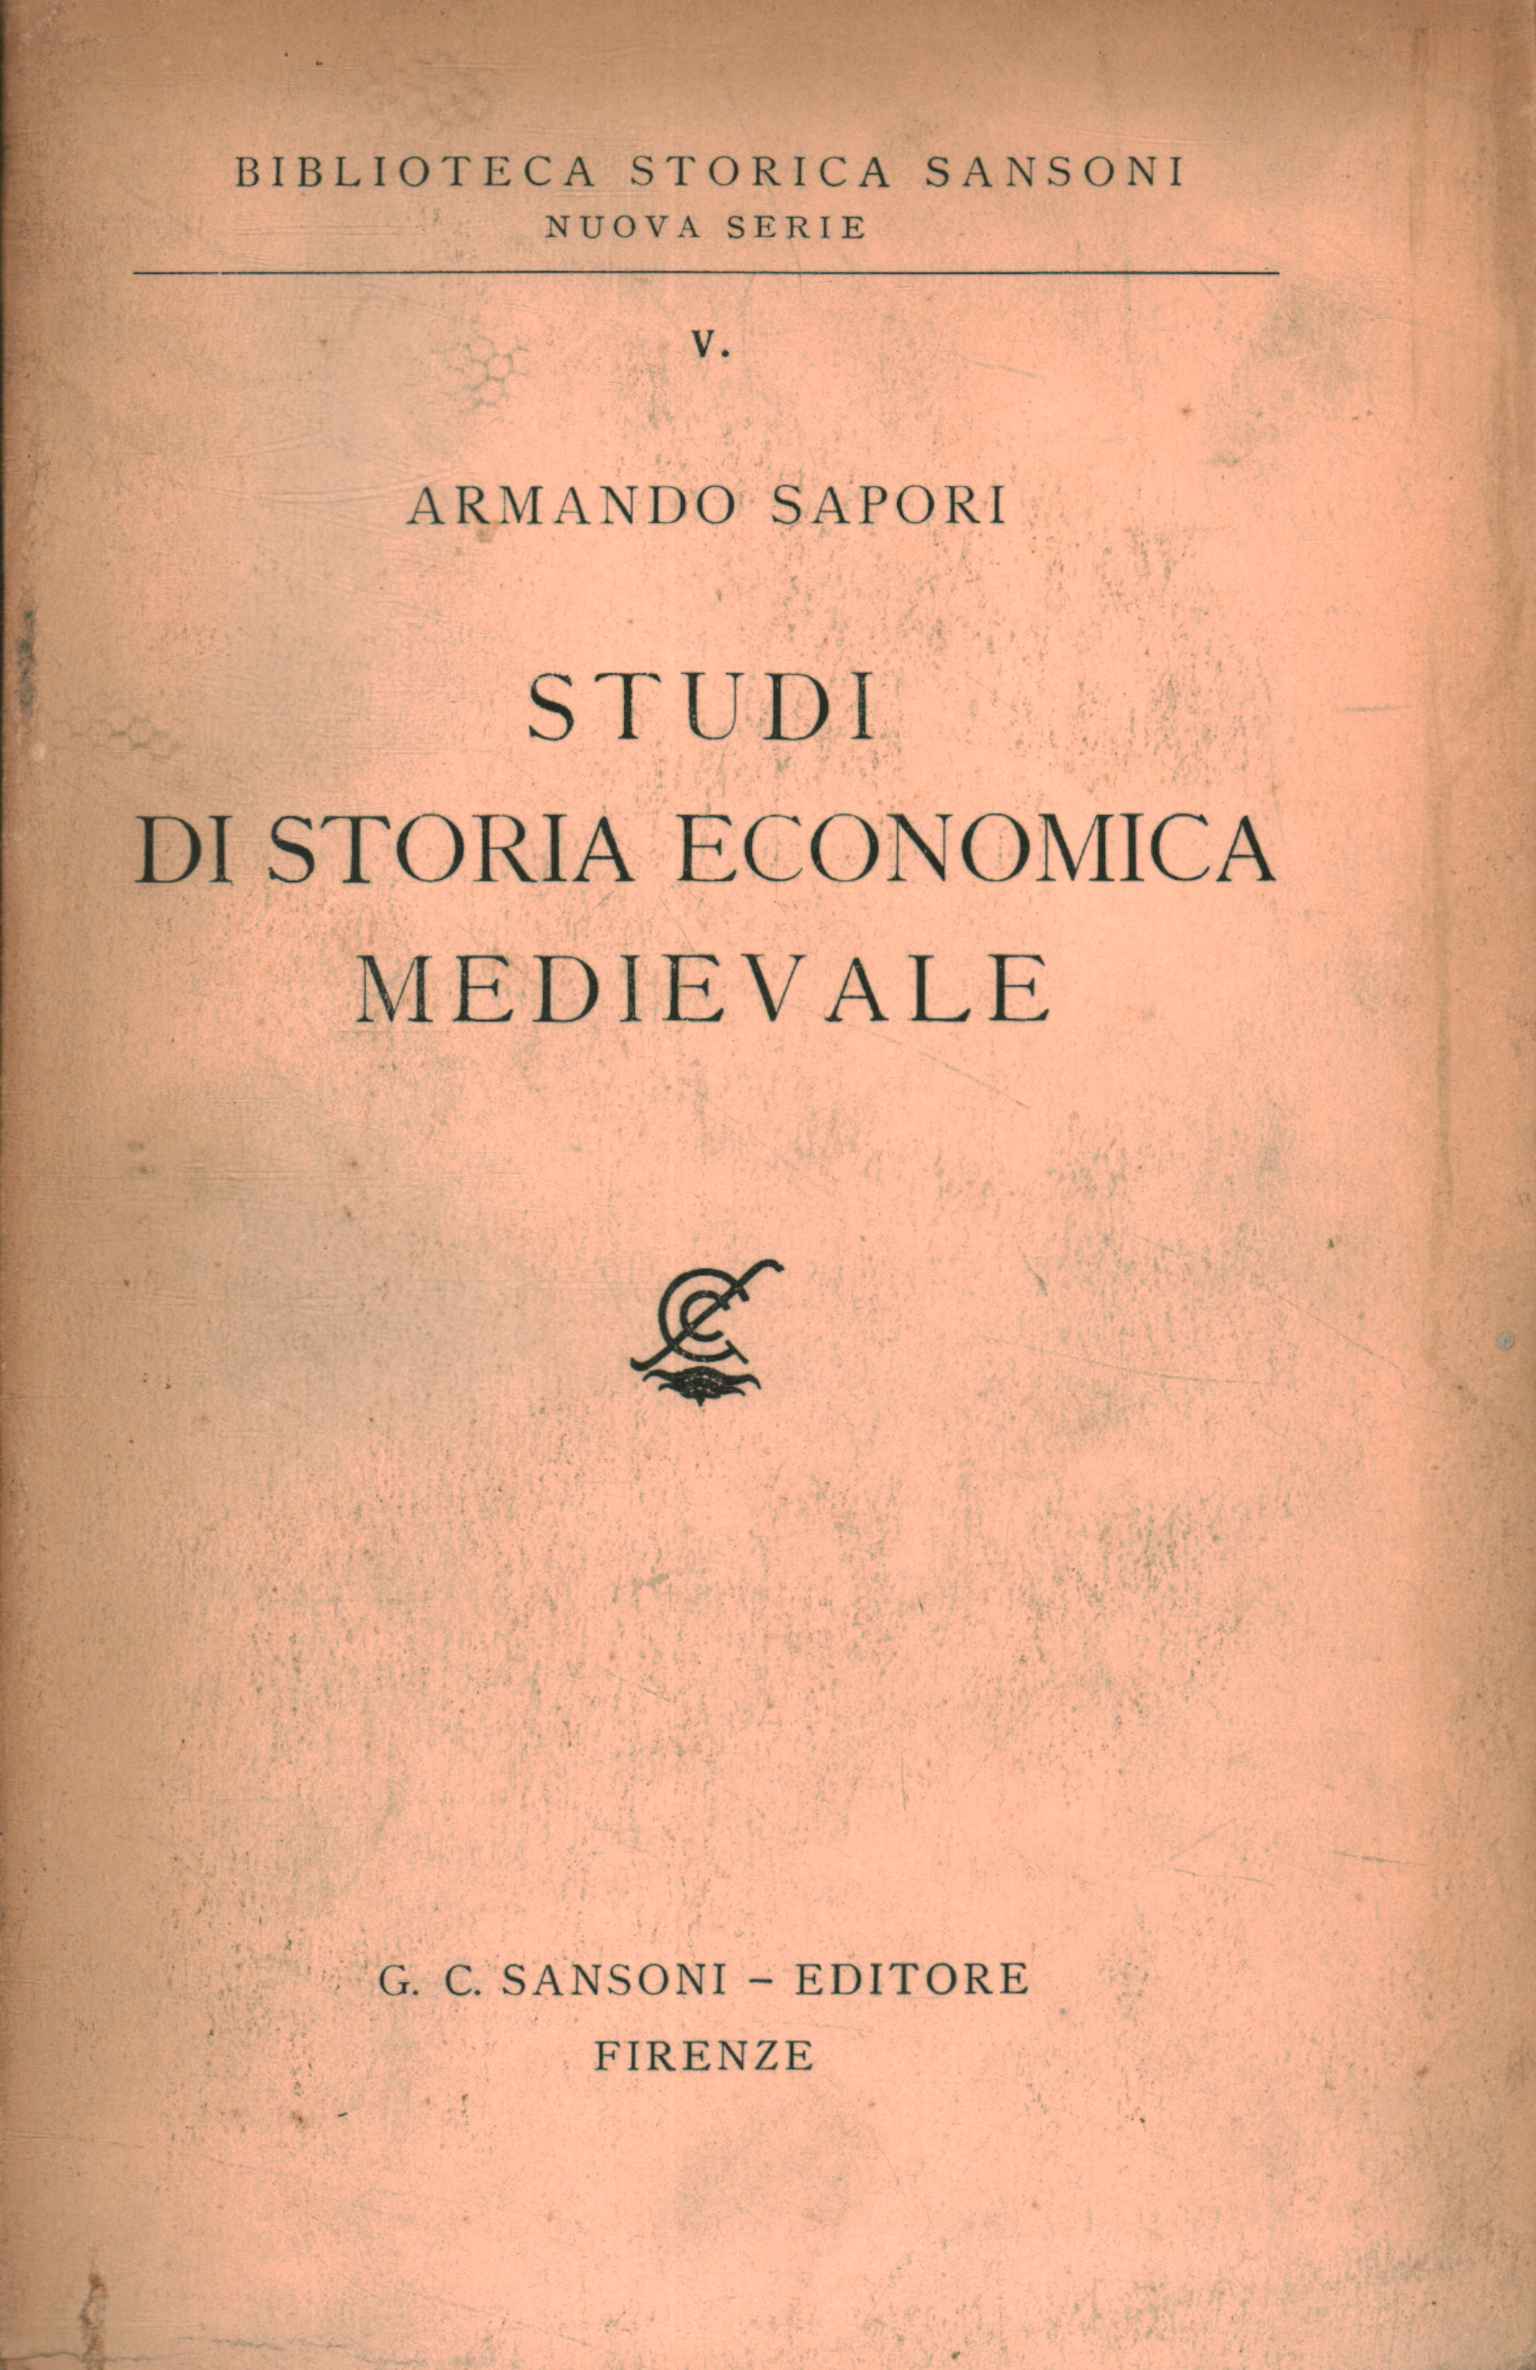 Estudios de historia económica medieval.